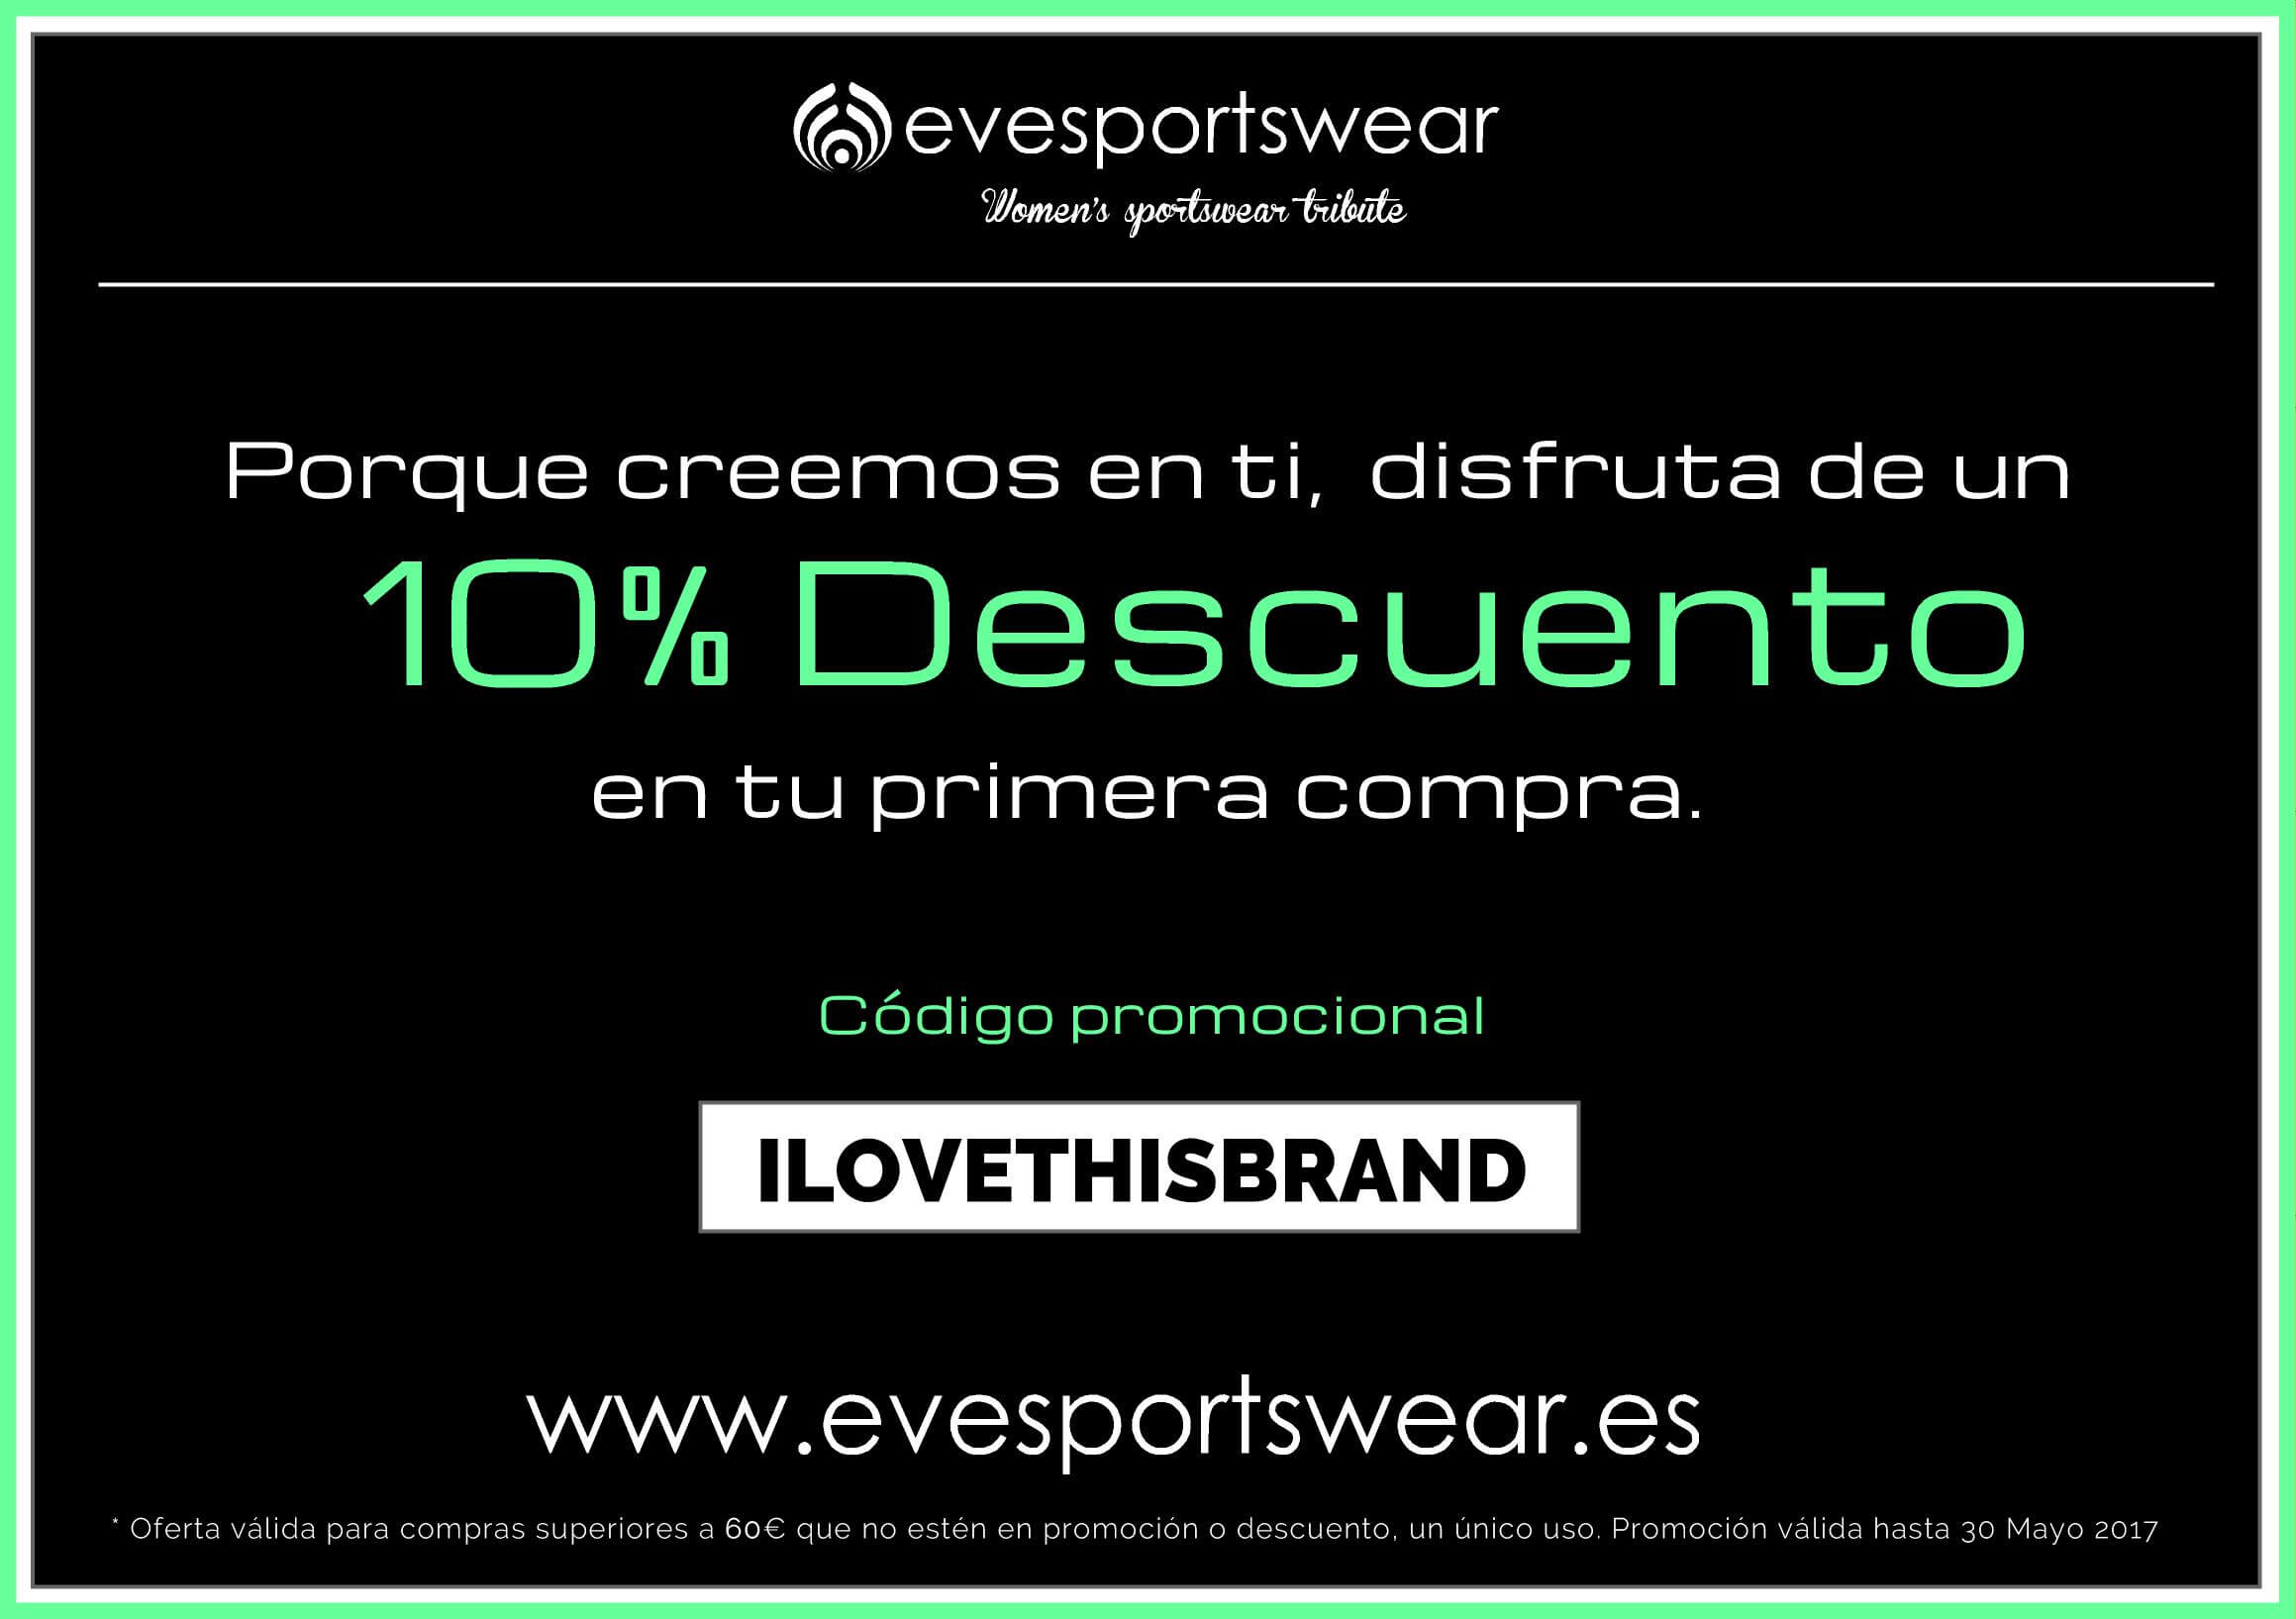 Promo Evesportswear